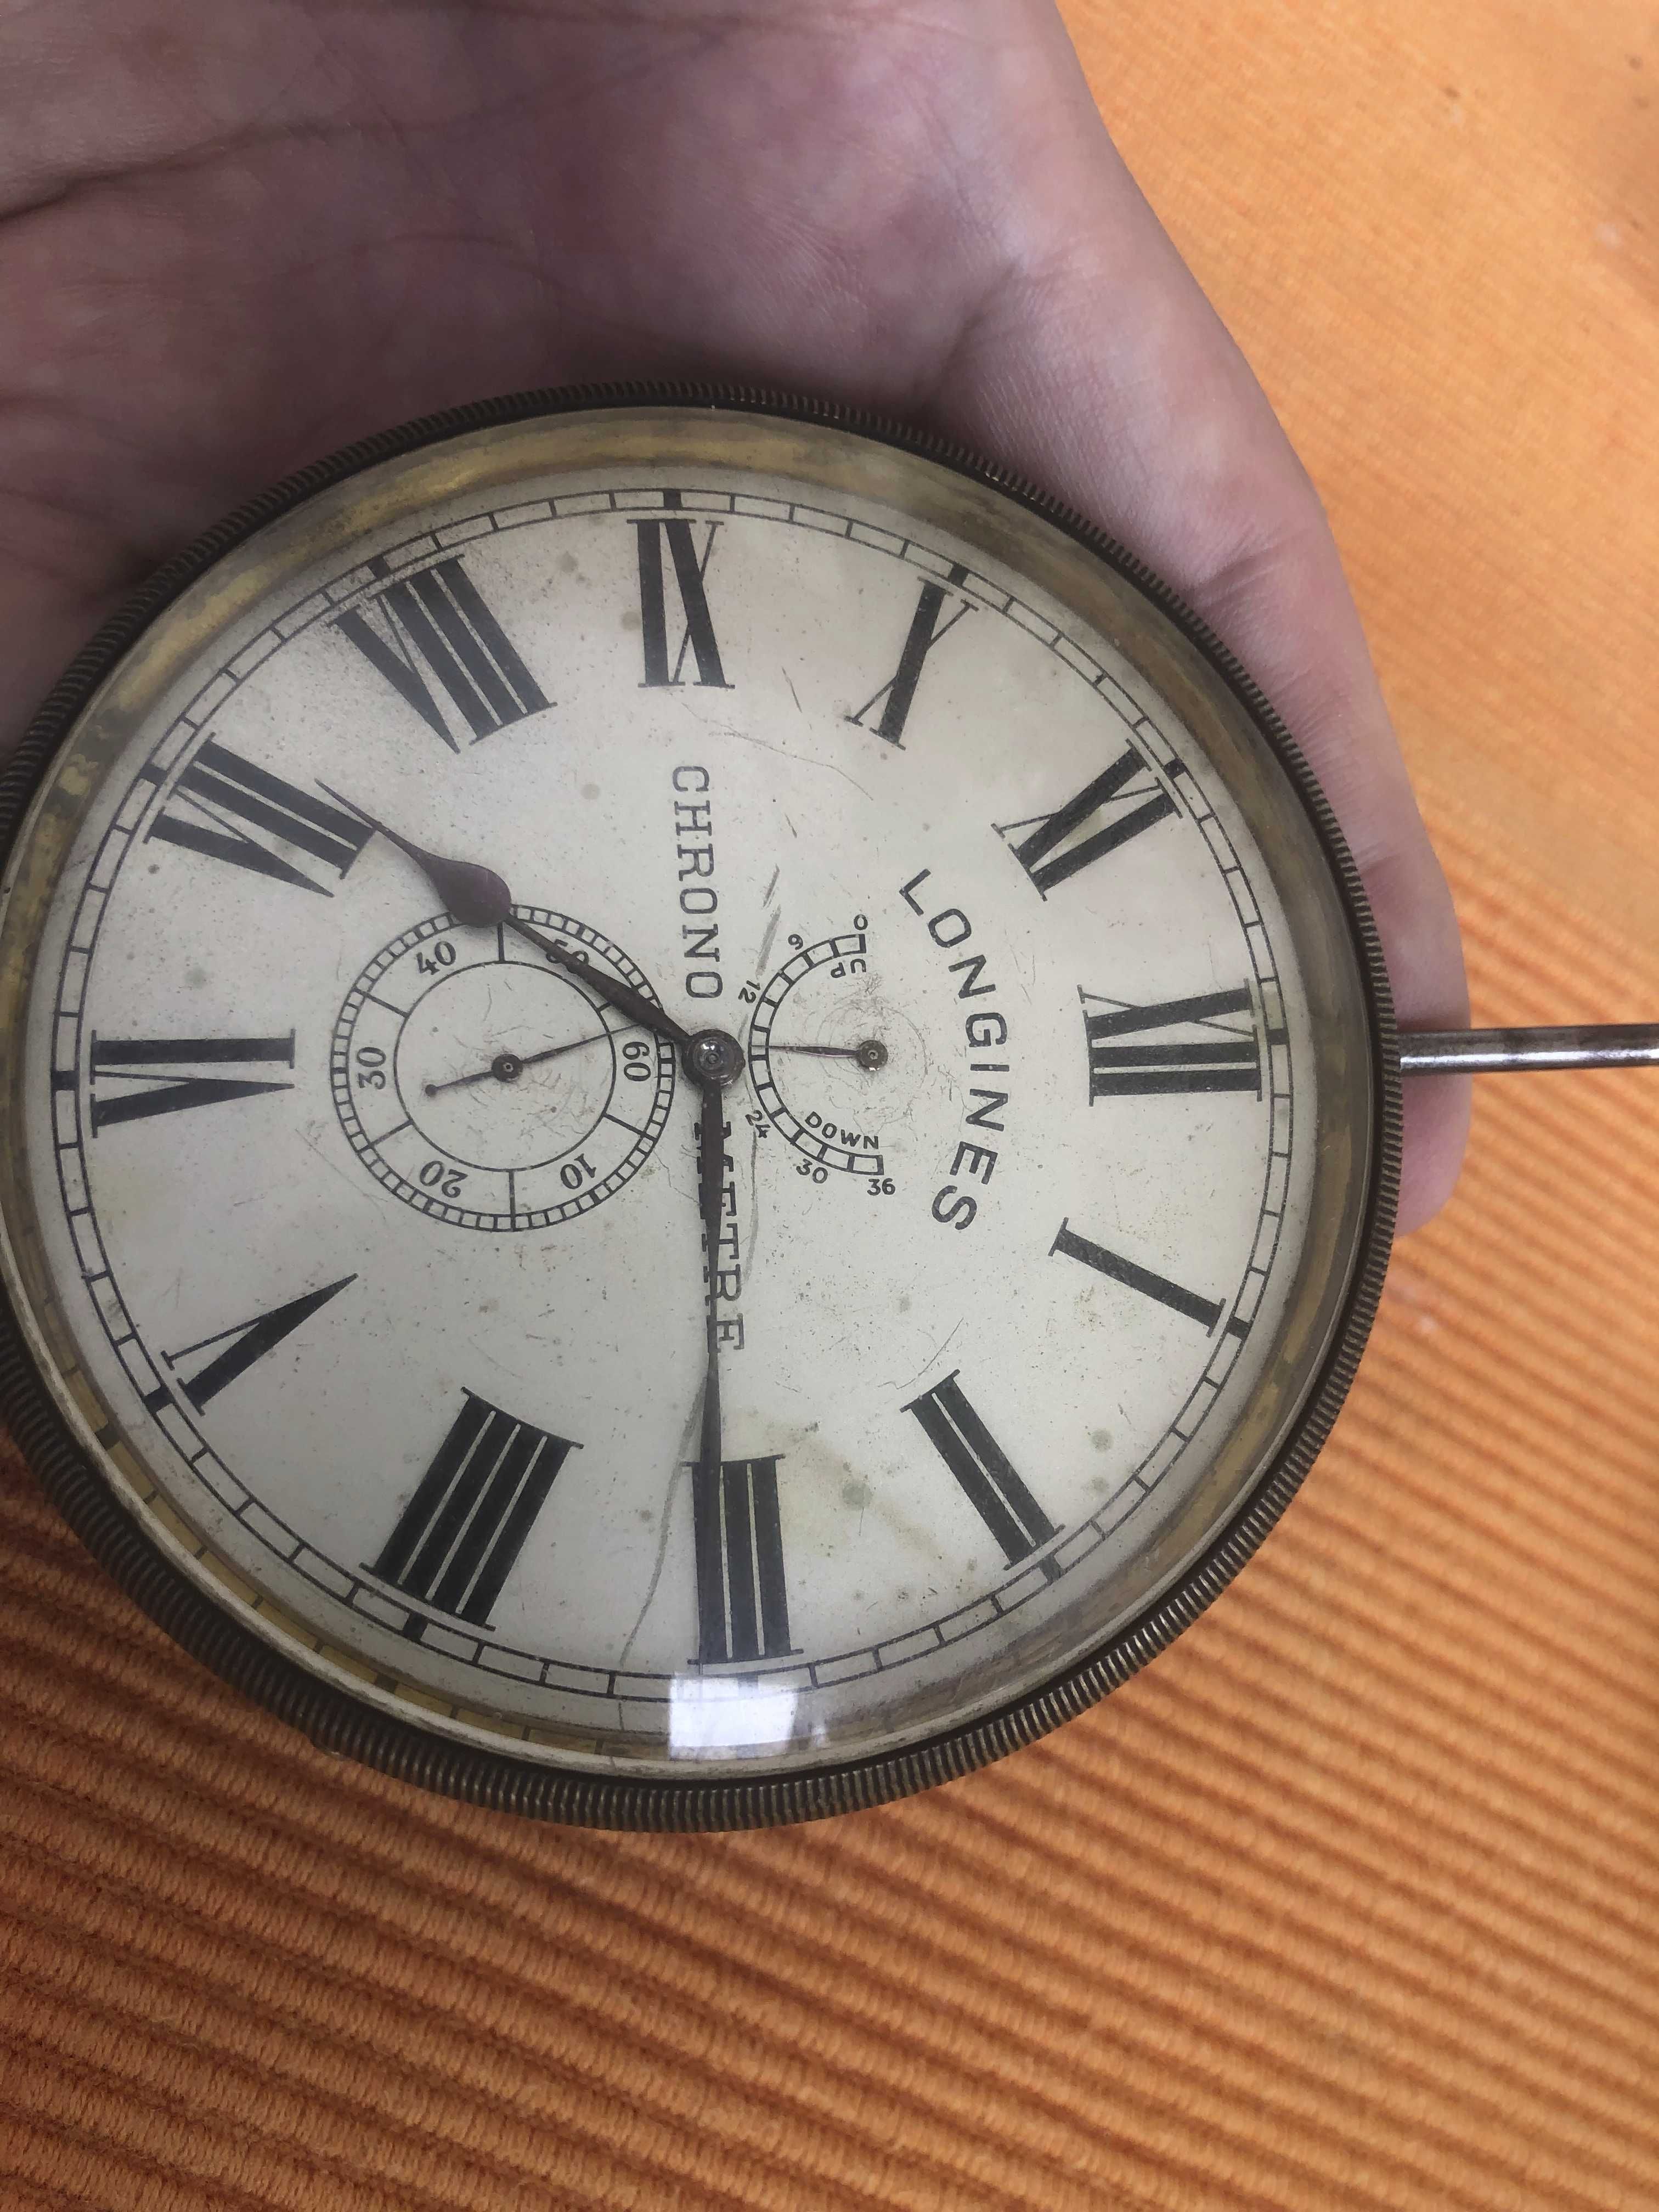 Relógio longines raro de bolso/expositor de relojoaria. Calibre 2129.